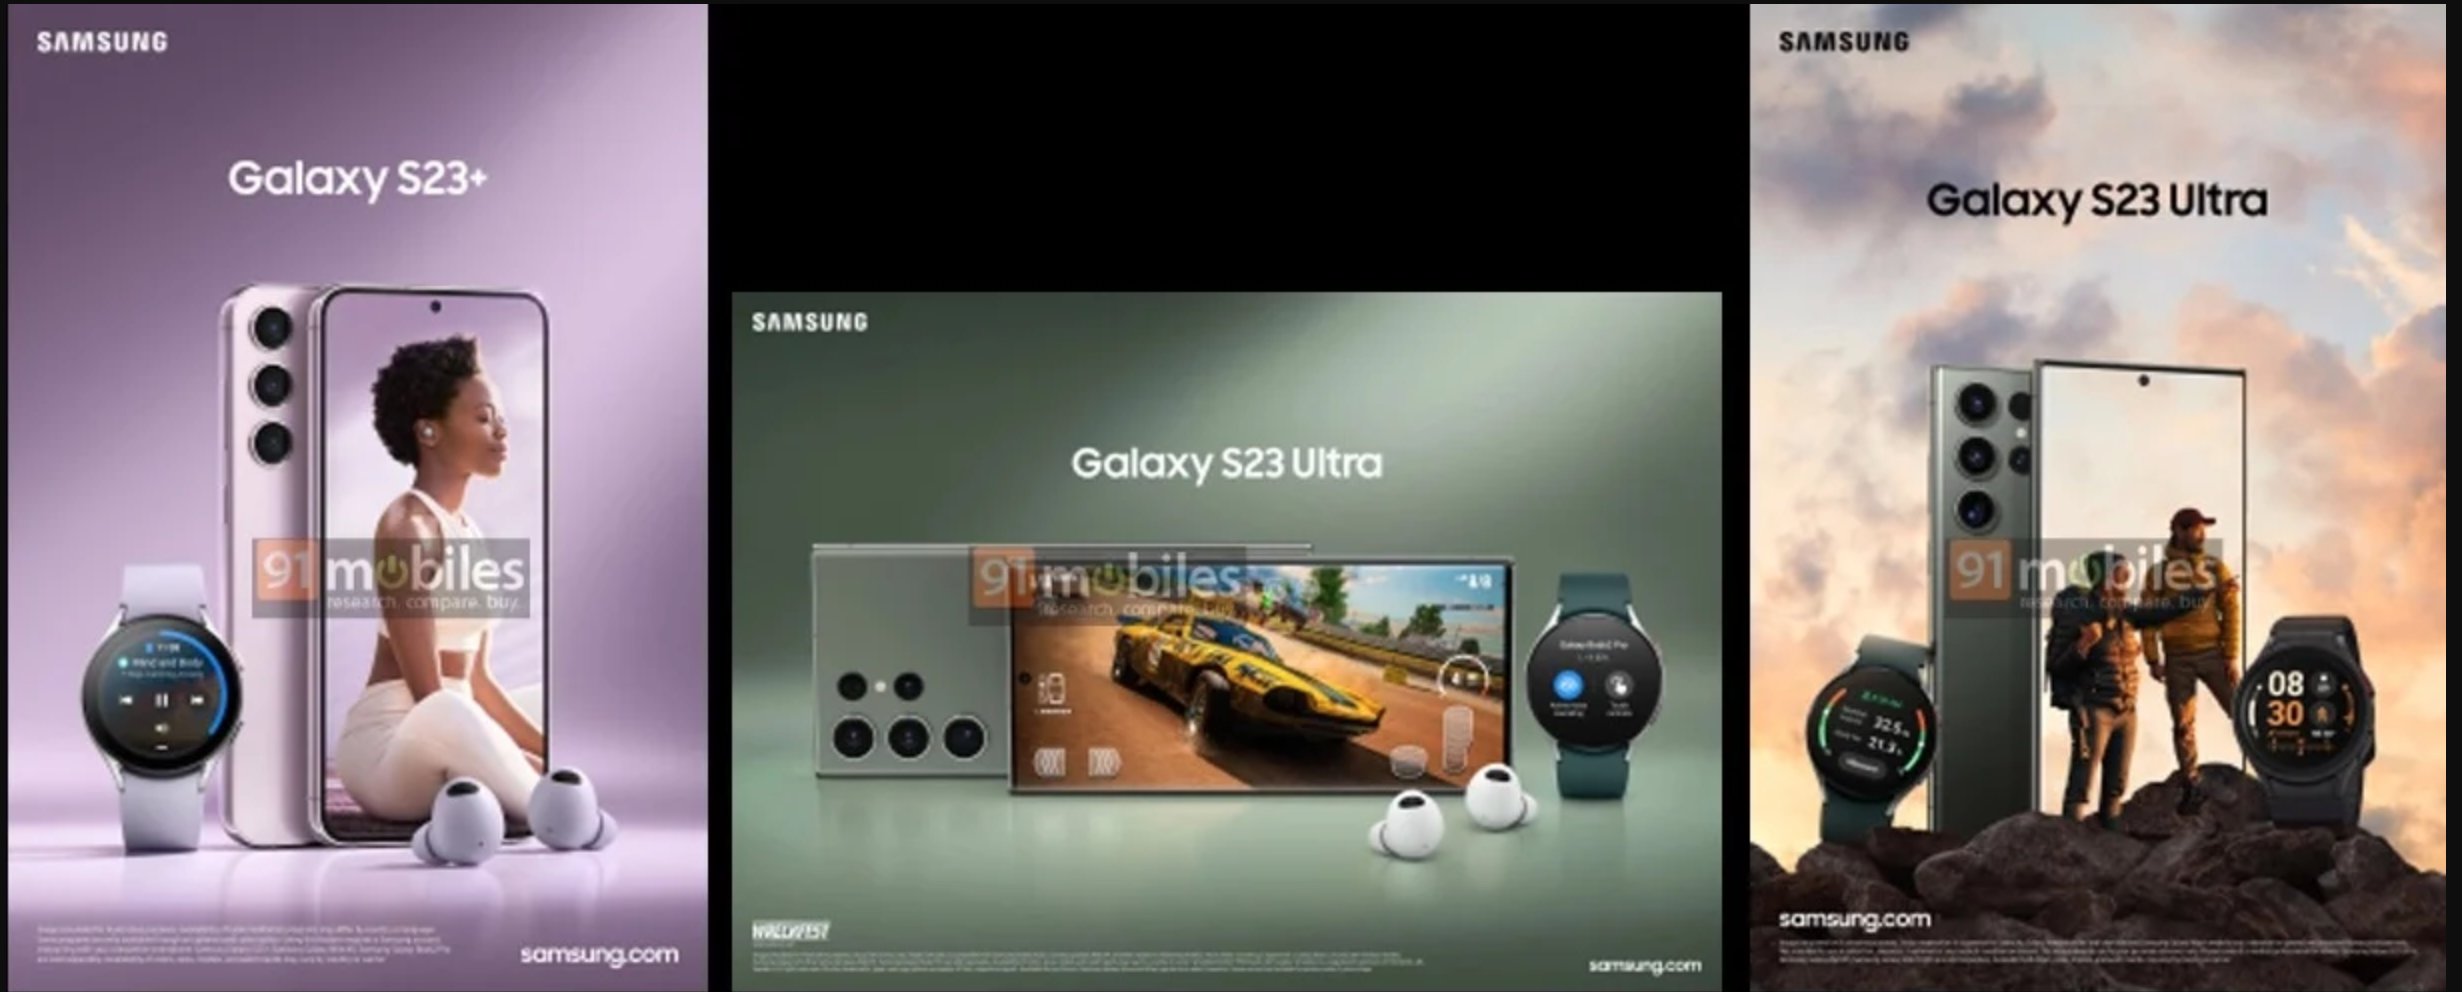 Самсунг s23 мтс. Самсунг с 23 ультра. Самсунг s23 Ultra камера. Самсунг галакси s23 ультра. Samsung Galaxy 23 Ultra.